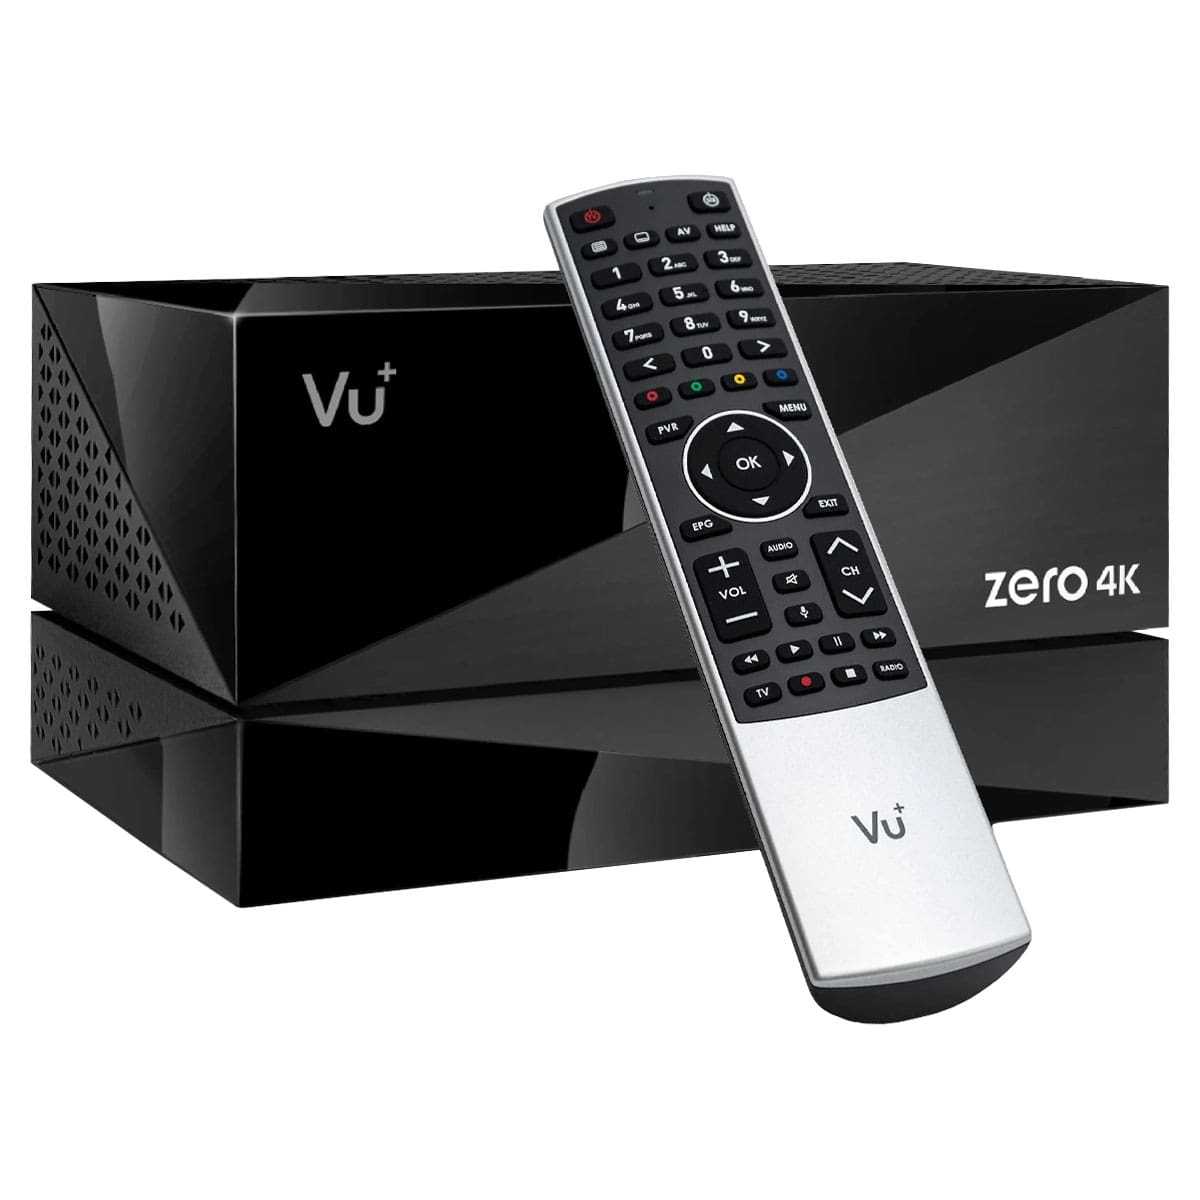 VU+ Plus Zero 4K BT DVB-C/T2 Kabel Receiver inkl. PVR-Kit (UHD Linux HbbTV LAN) 500GB von VU+